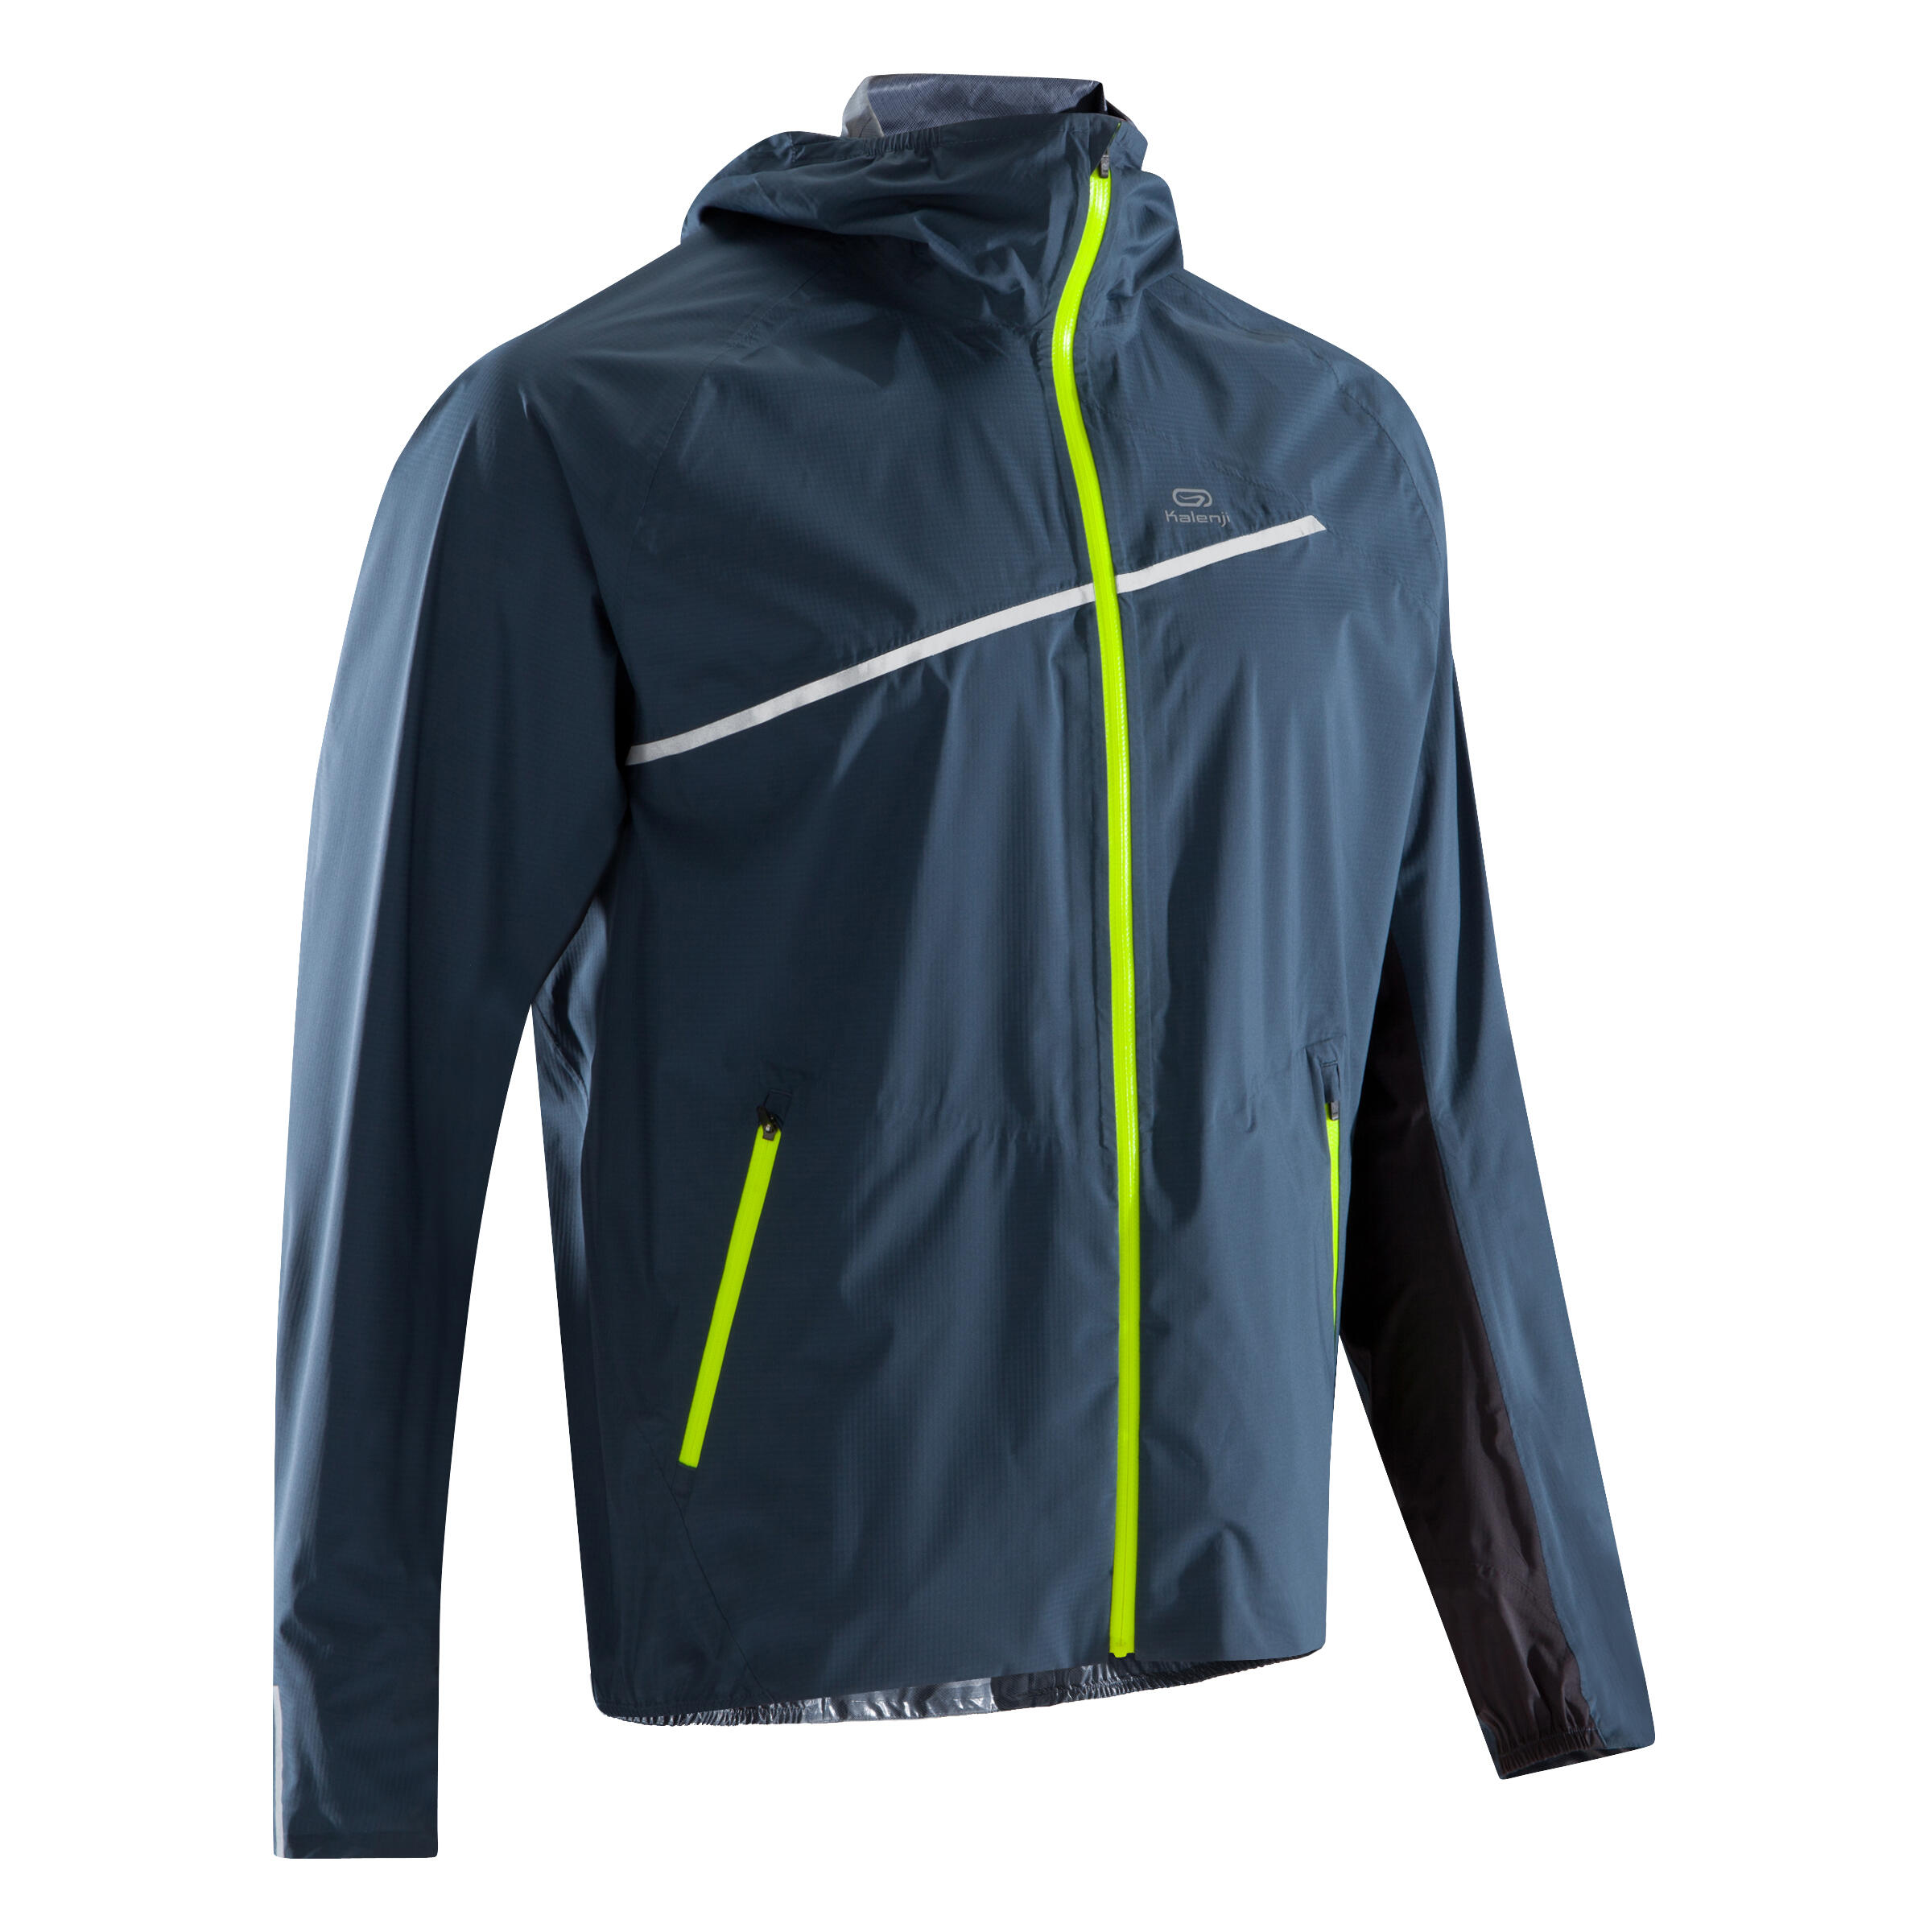 KIPRUN Men's Waterproof Trail Running Jacket - blue/storm grey